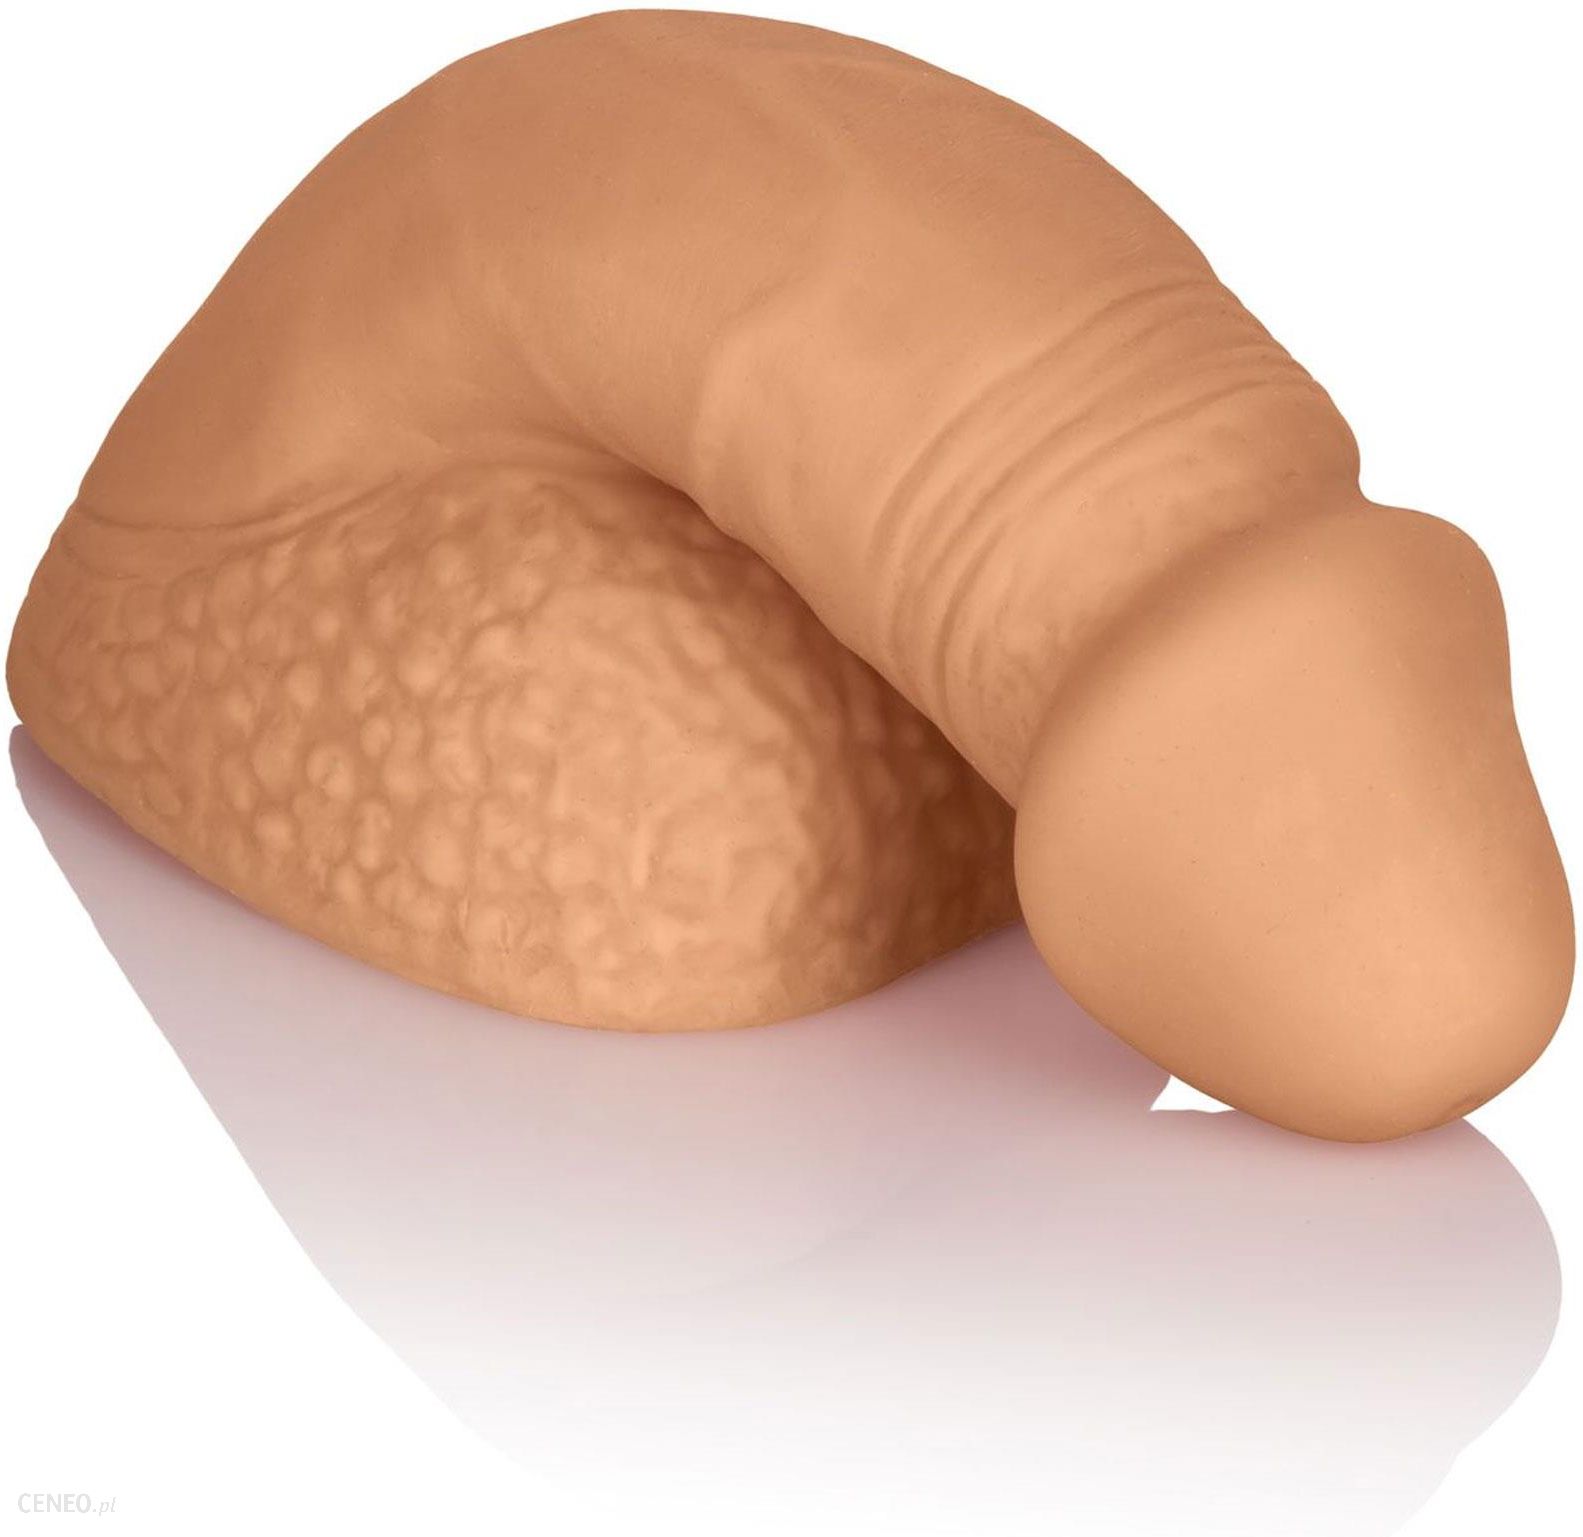 karmelowy penis